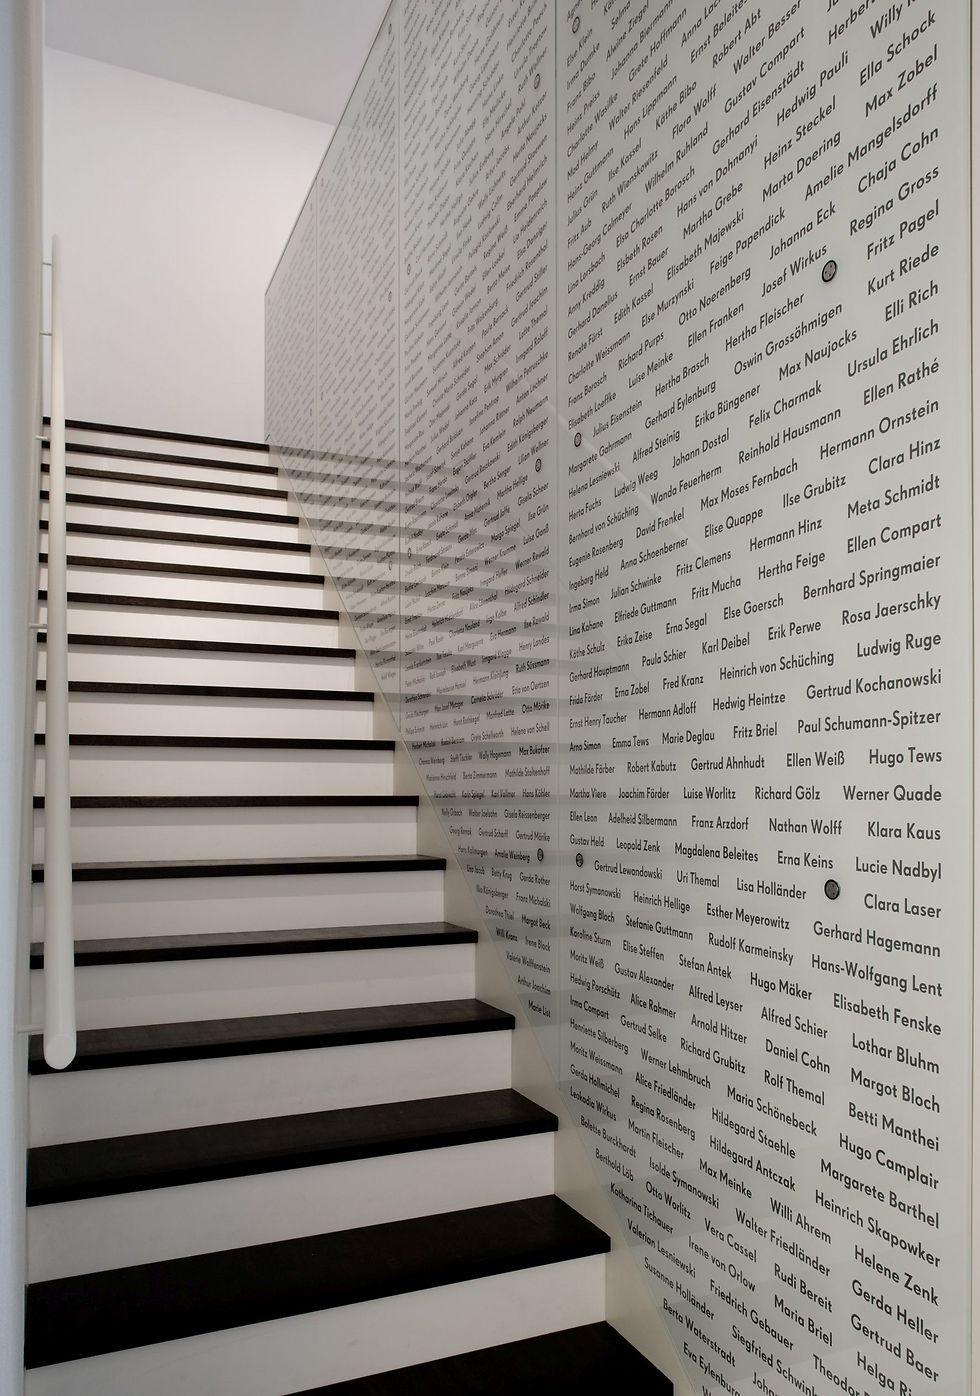 המדרגות וקיר שמות המצילים במוזיאון הגיבורים ()